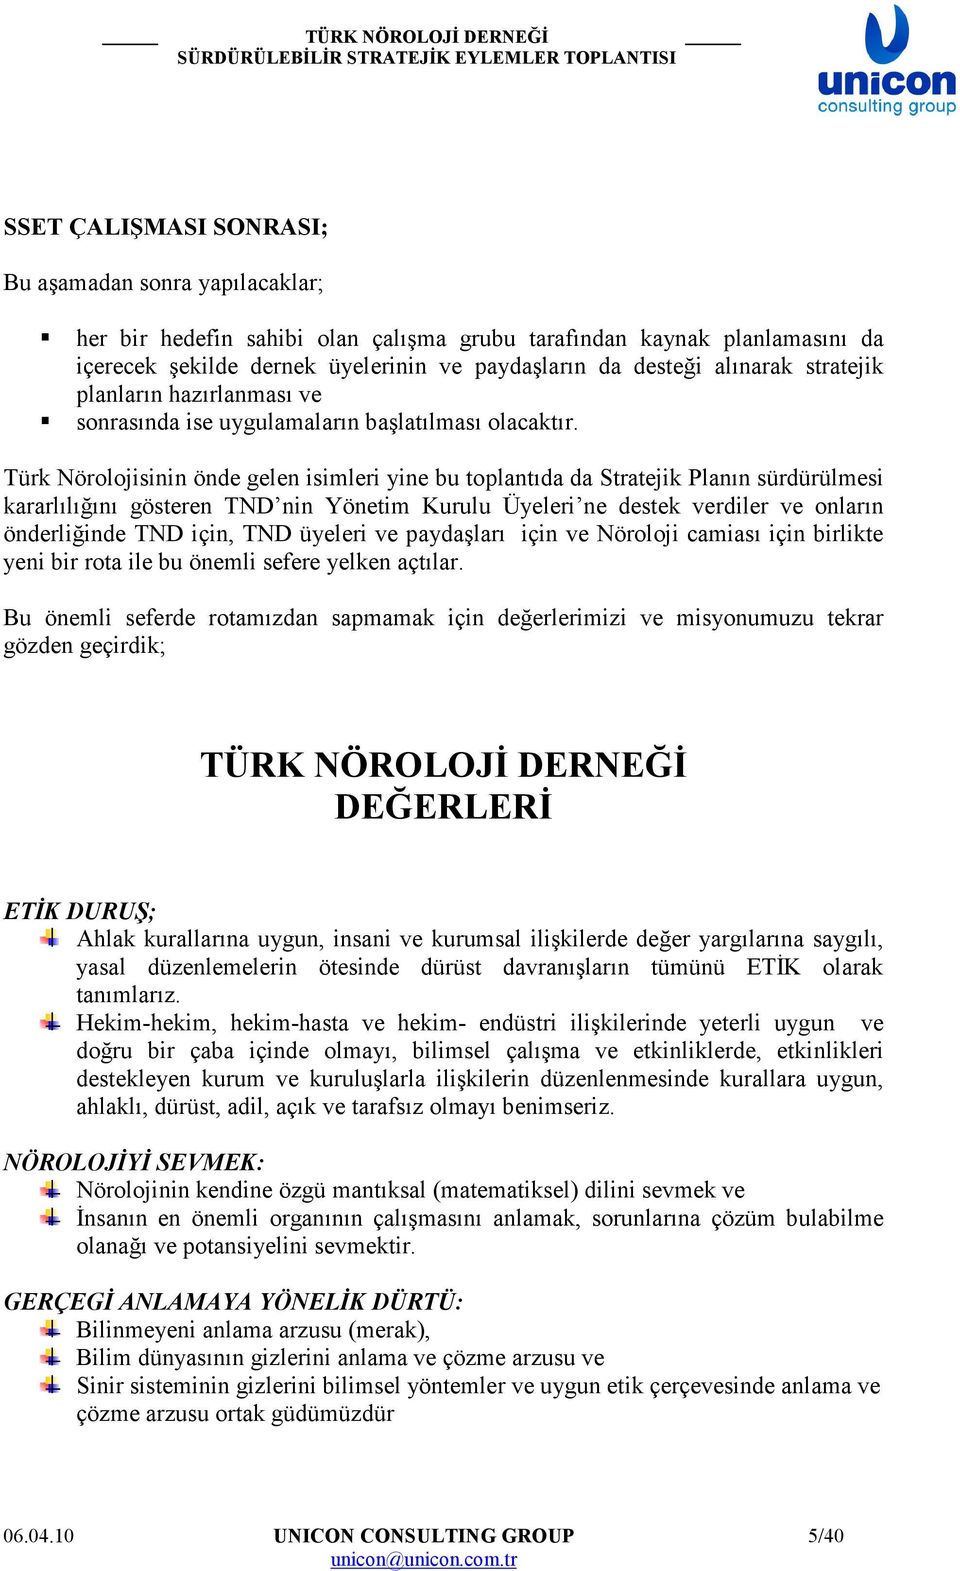 Türk Nörolojisinin önde gelen isimleri yine bu toplantıda da Stratejik Planın sürdürülmesi kararlılığını gösteren TND nin Yönetim Kurulu Üyeleri ne destek verdiler ve onların önderliğinde TND için,